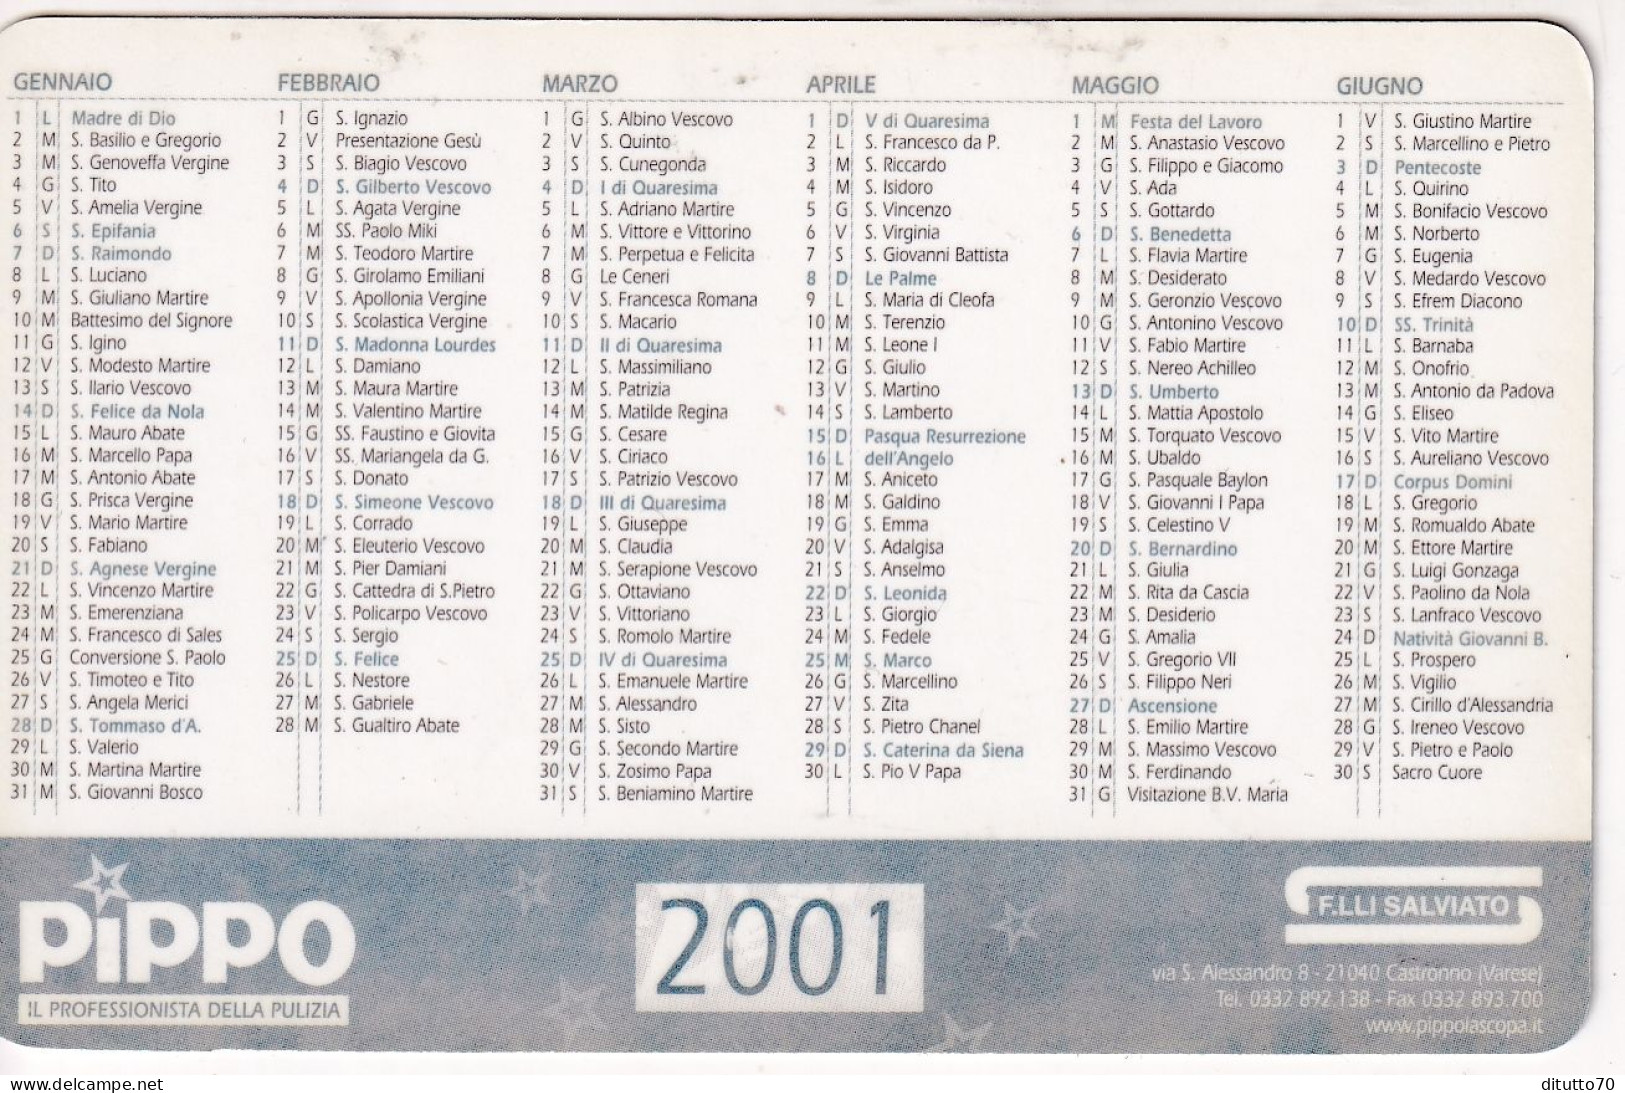 Calendarietto - Pippo - F.lli Salviato - Castrollo - Varese - Anno 2001 - Small : 2001-...